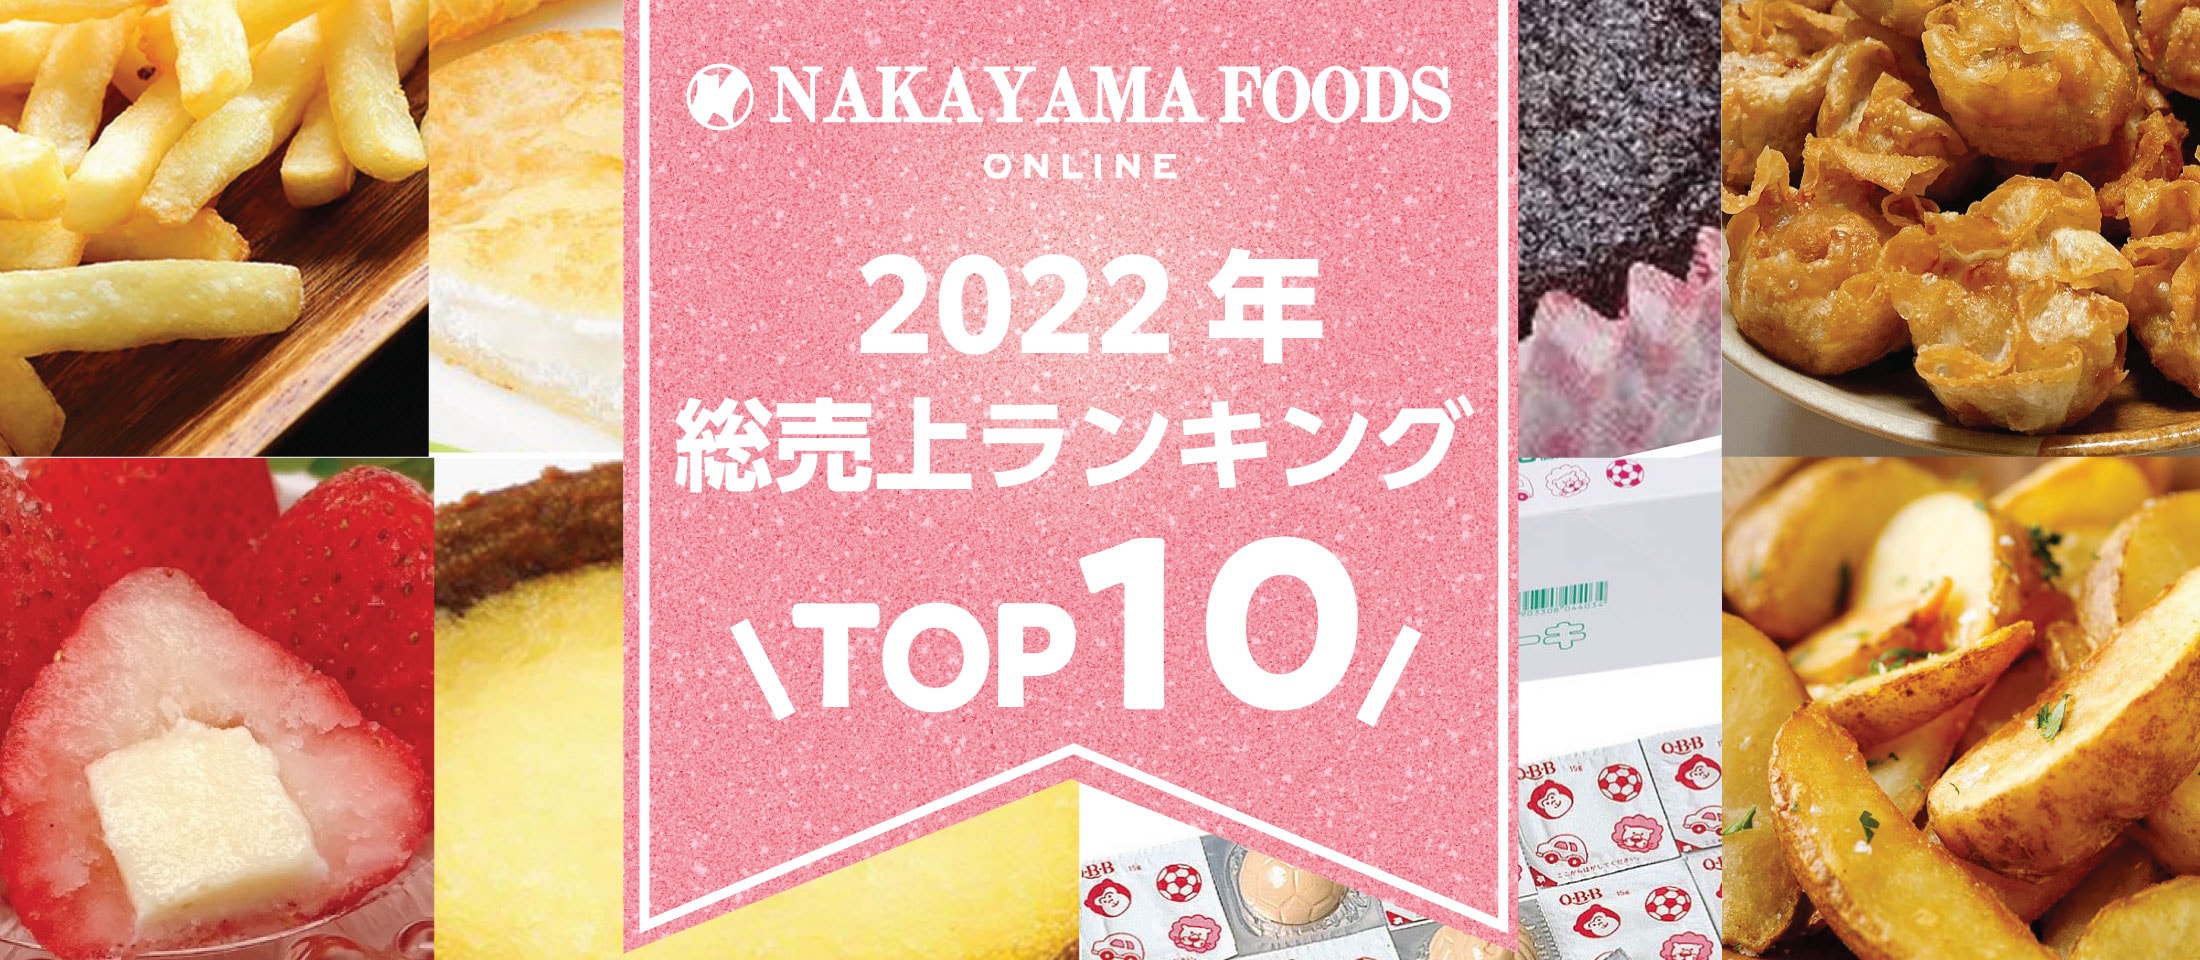 ナカヤマフーズオンライン
2022年総売り上げTOP10 業務用食品・冷凍食品通販 ナカヤマフーズオンライン